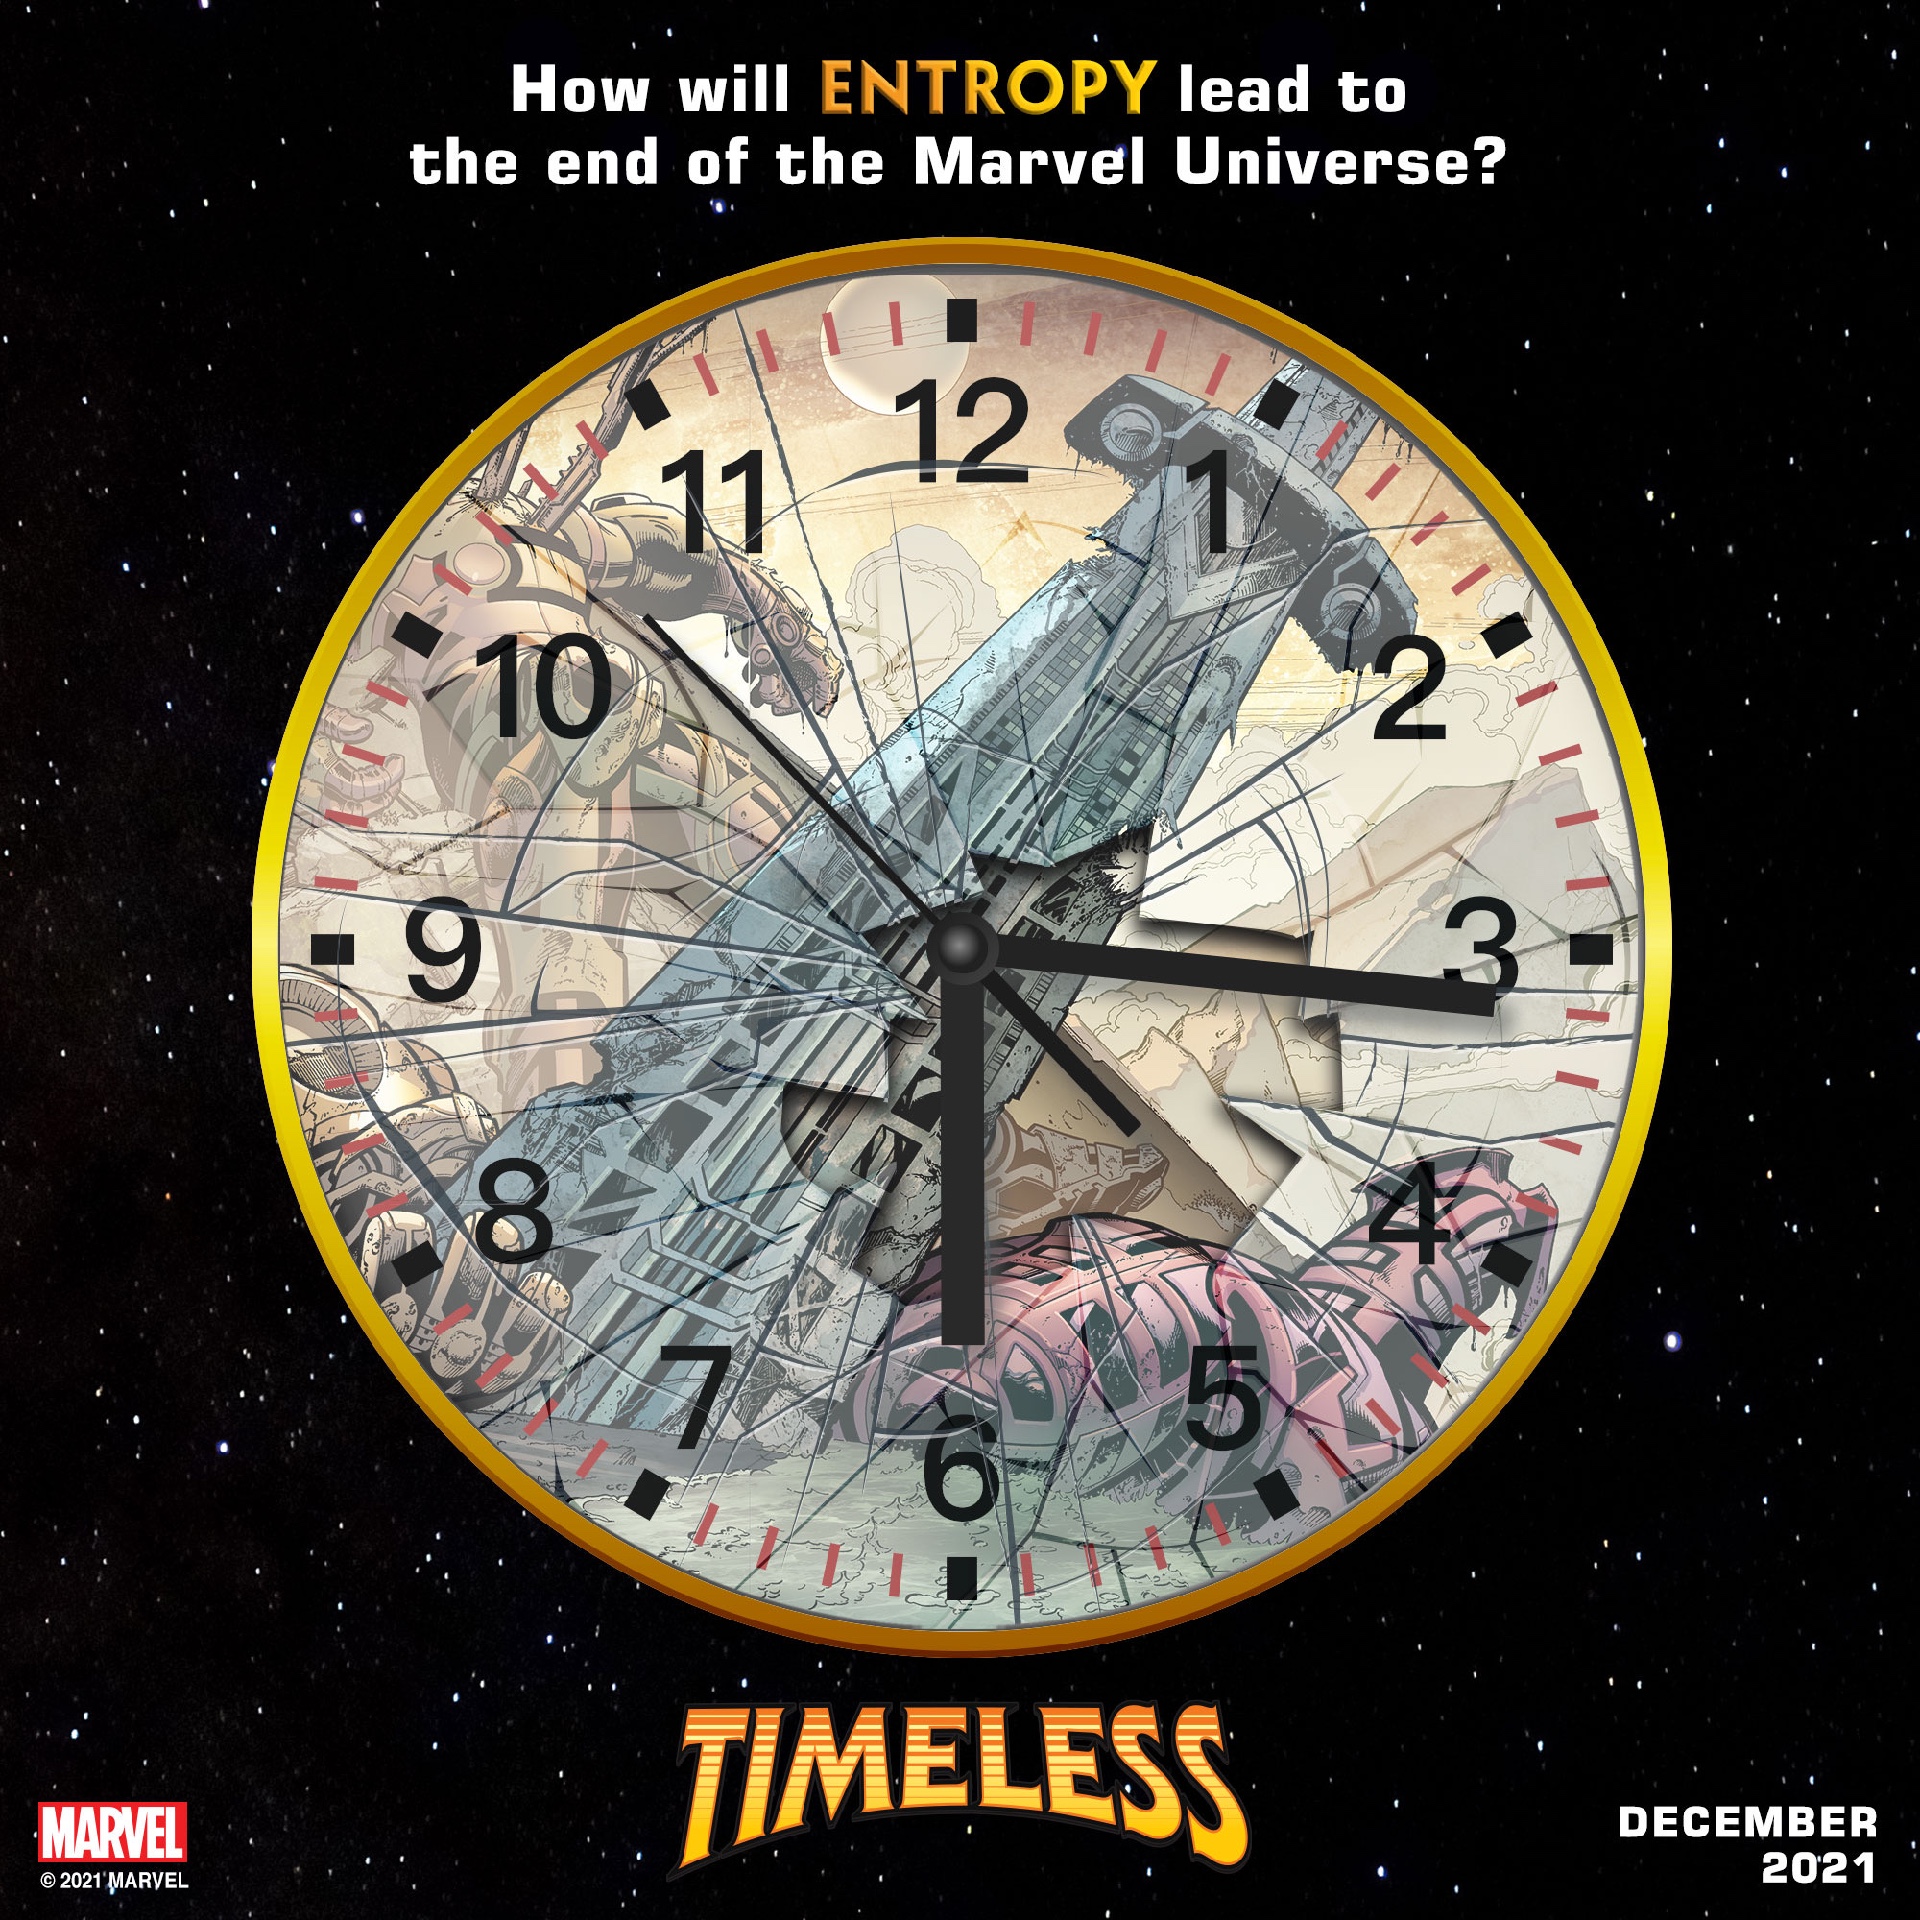 Timeless #1 için teaser